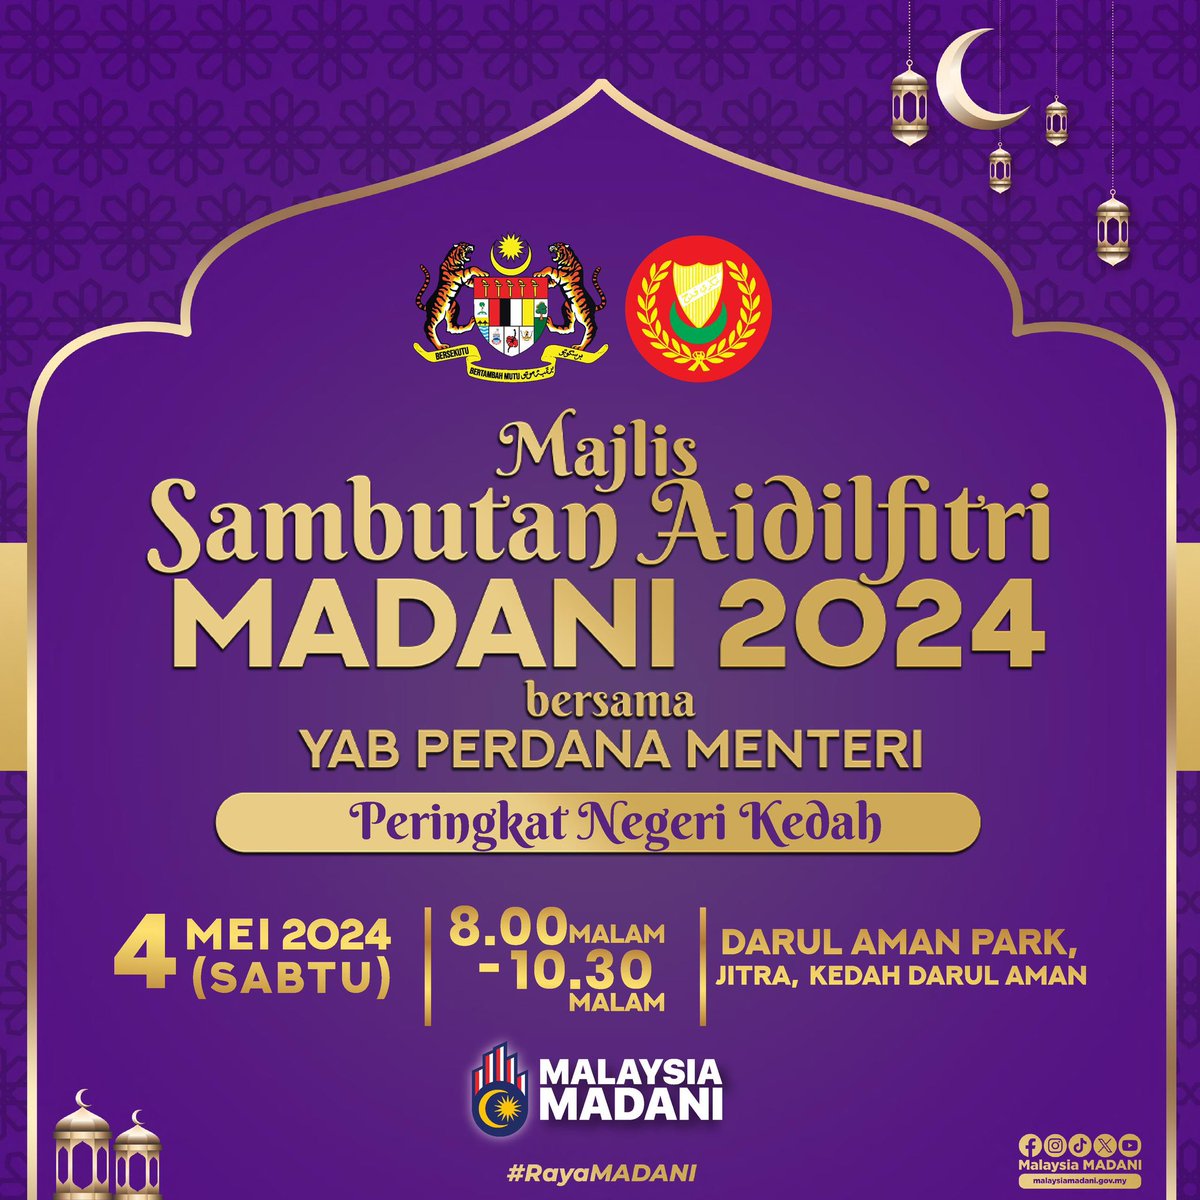 Saya ingin menjemput seluruh masyarakat di Negeri Kedah untuk bersama-sama hadir memeriahkan Majlis Sambutan Aidilfitri MADANI 2024 bersama-sama YAB Perdana Menteri, Dato’ Seri Anwar Ibrahim pada 4 Mei 2024 bermula jam 8 malam di Darul Aman Park, Jitra Kedah.

#MalaysiaMadani